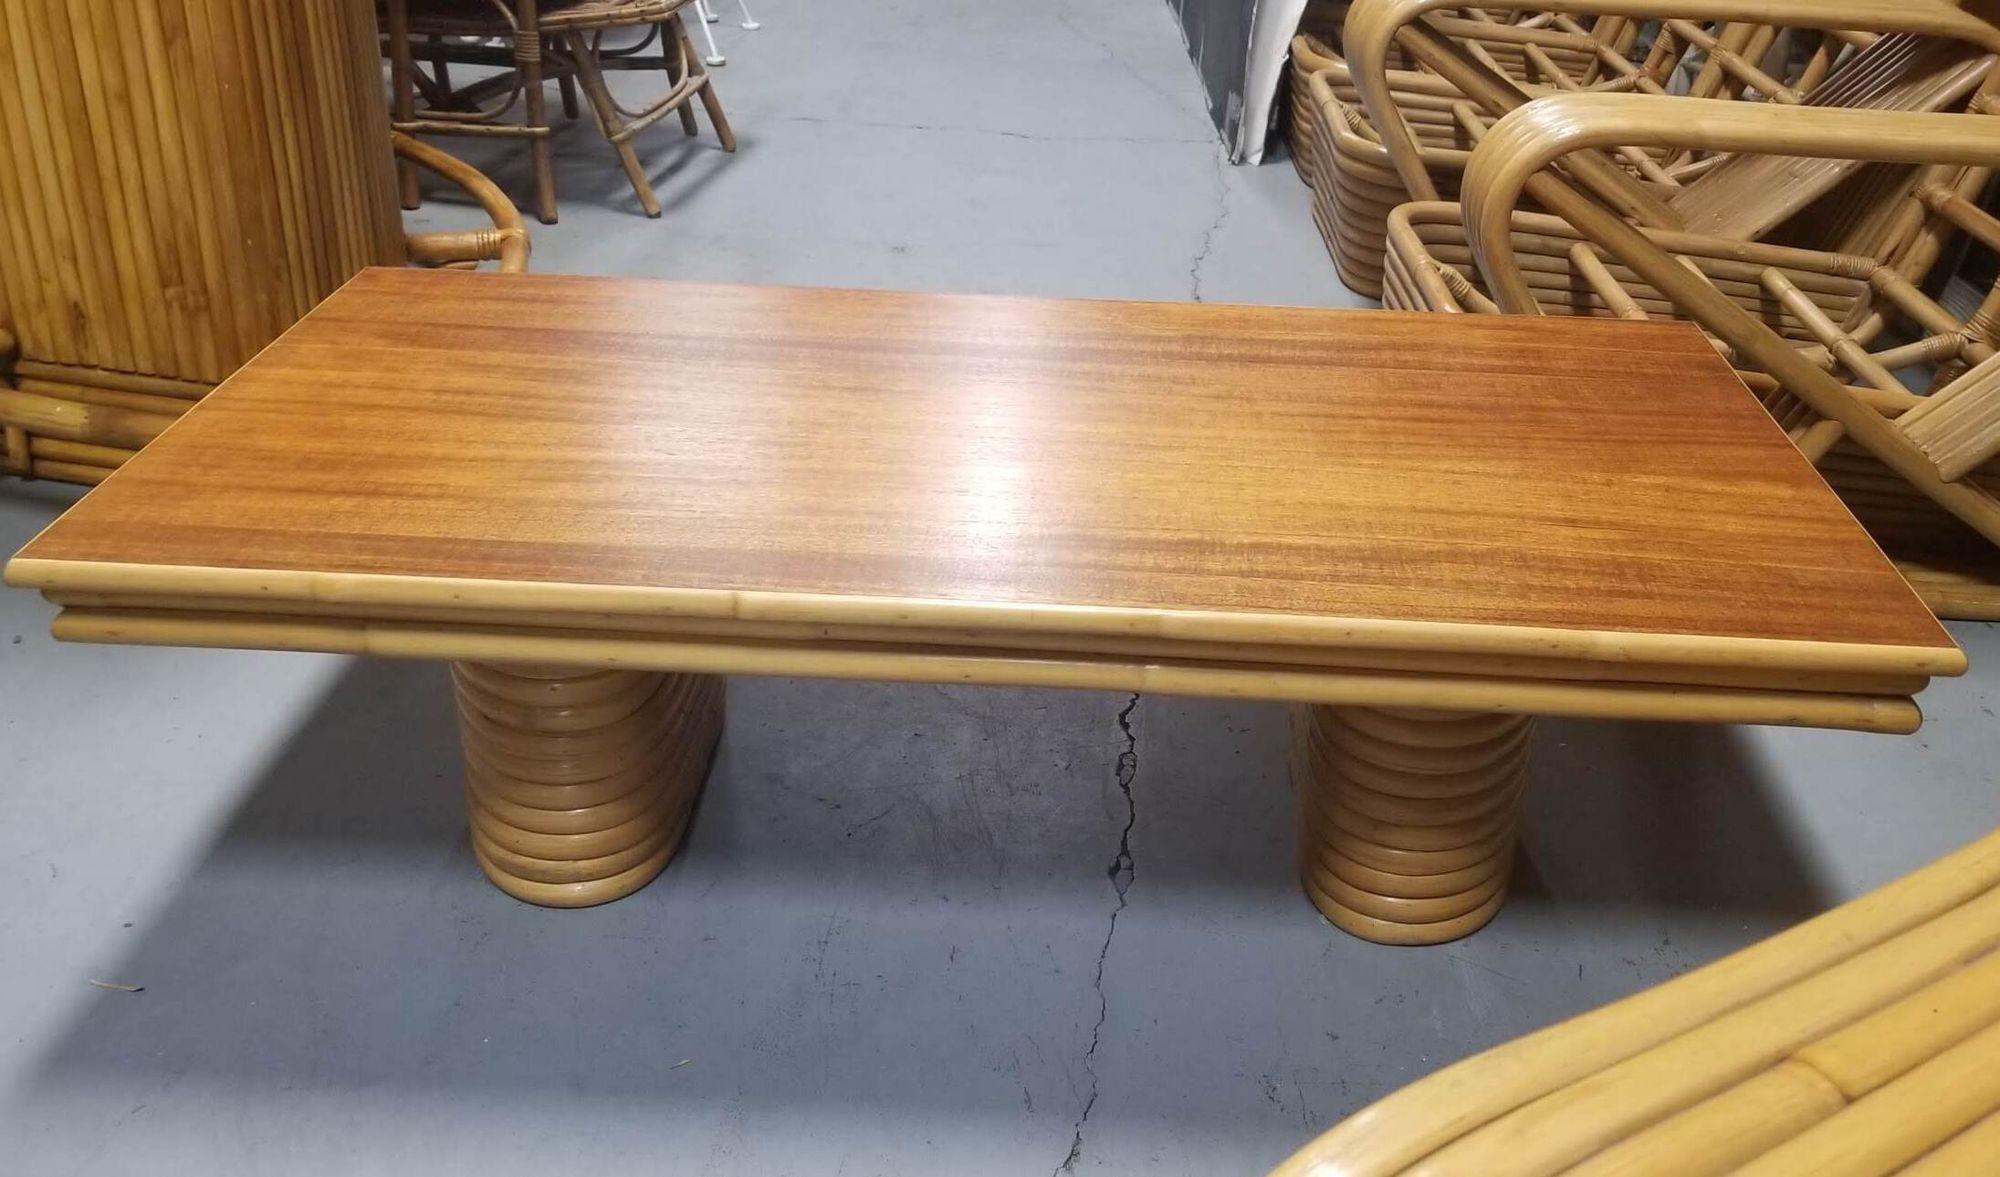 Cette table basse en rotin restauré présente des pieds empilés qui exsudent l'élégance structurelle, complétés par un riche plateau en acajou. La fusion de l'attrait naturel du rotin et de la chaleur de l'acajou crée un équilibre saisissant entre la